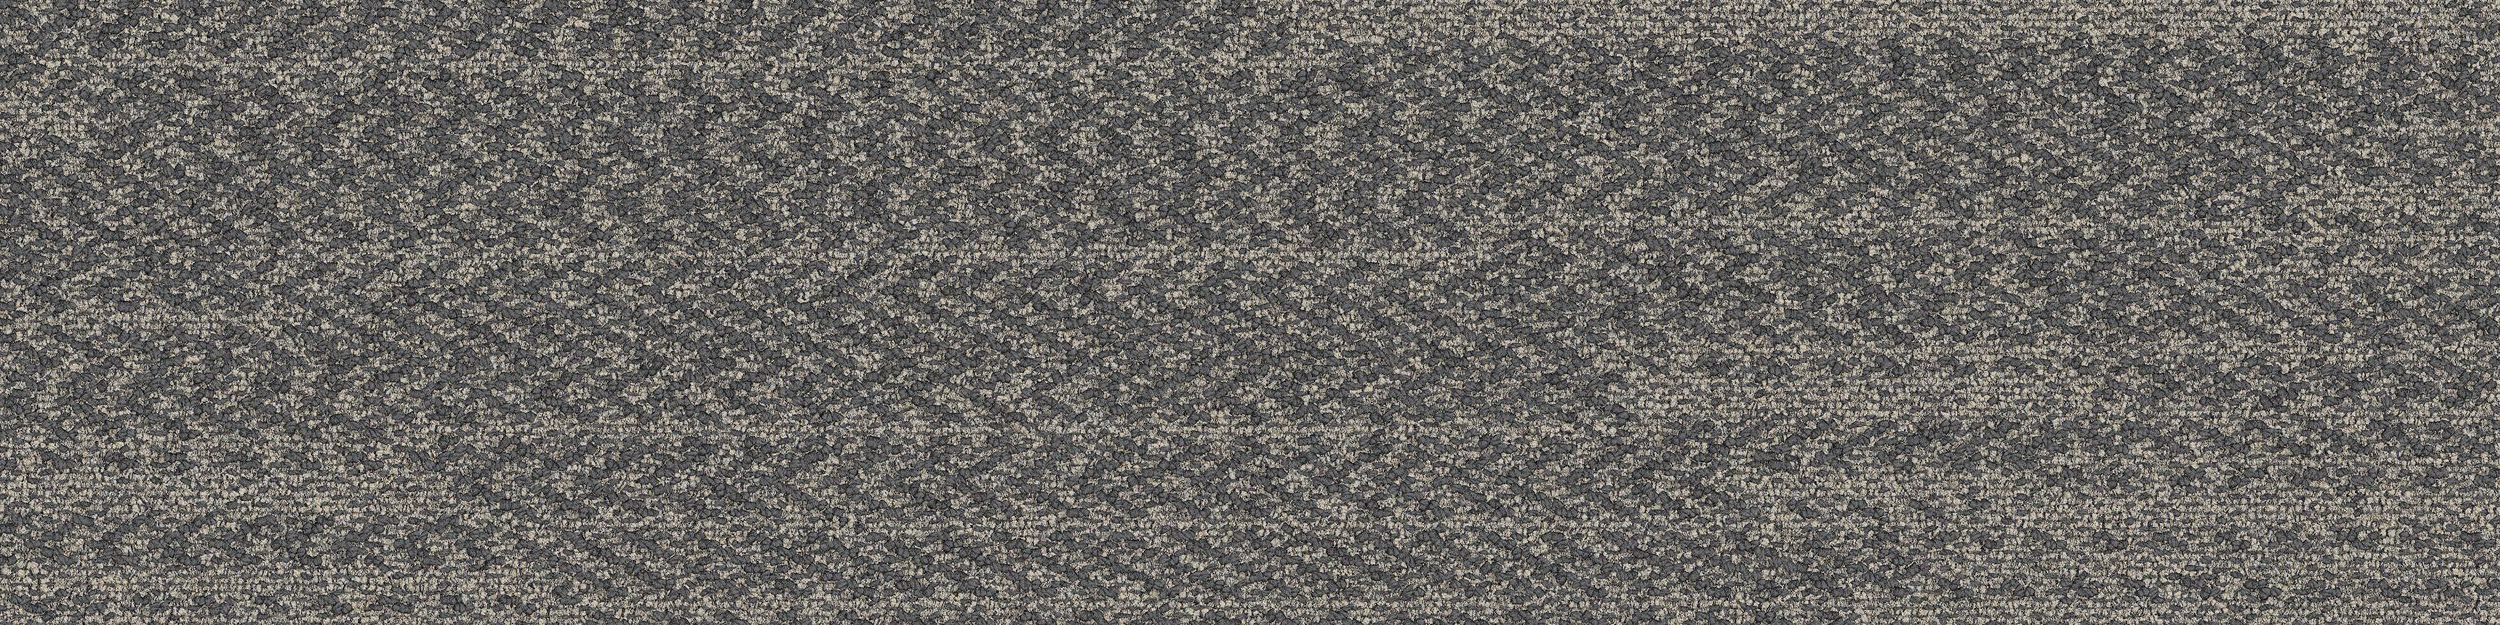 Open Air 408 Carpet Tile In Nickel imagen número 2